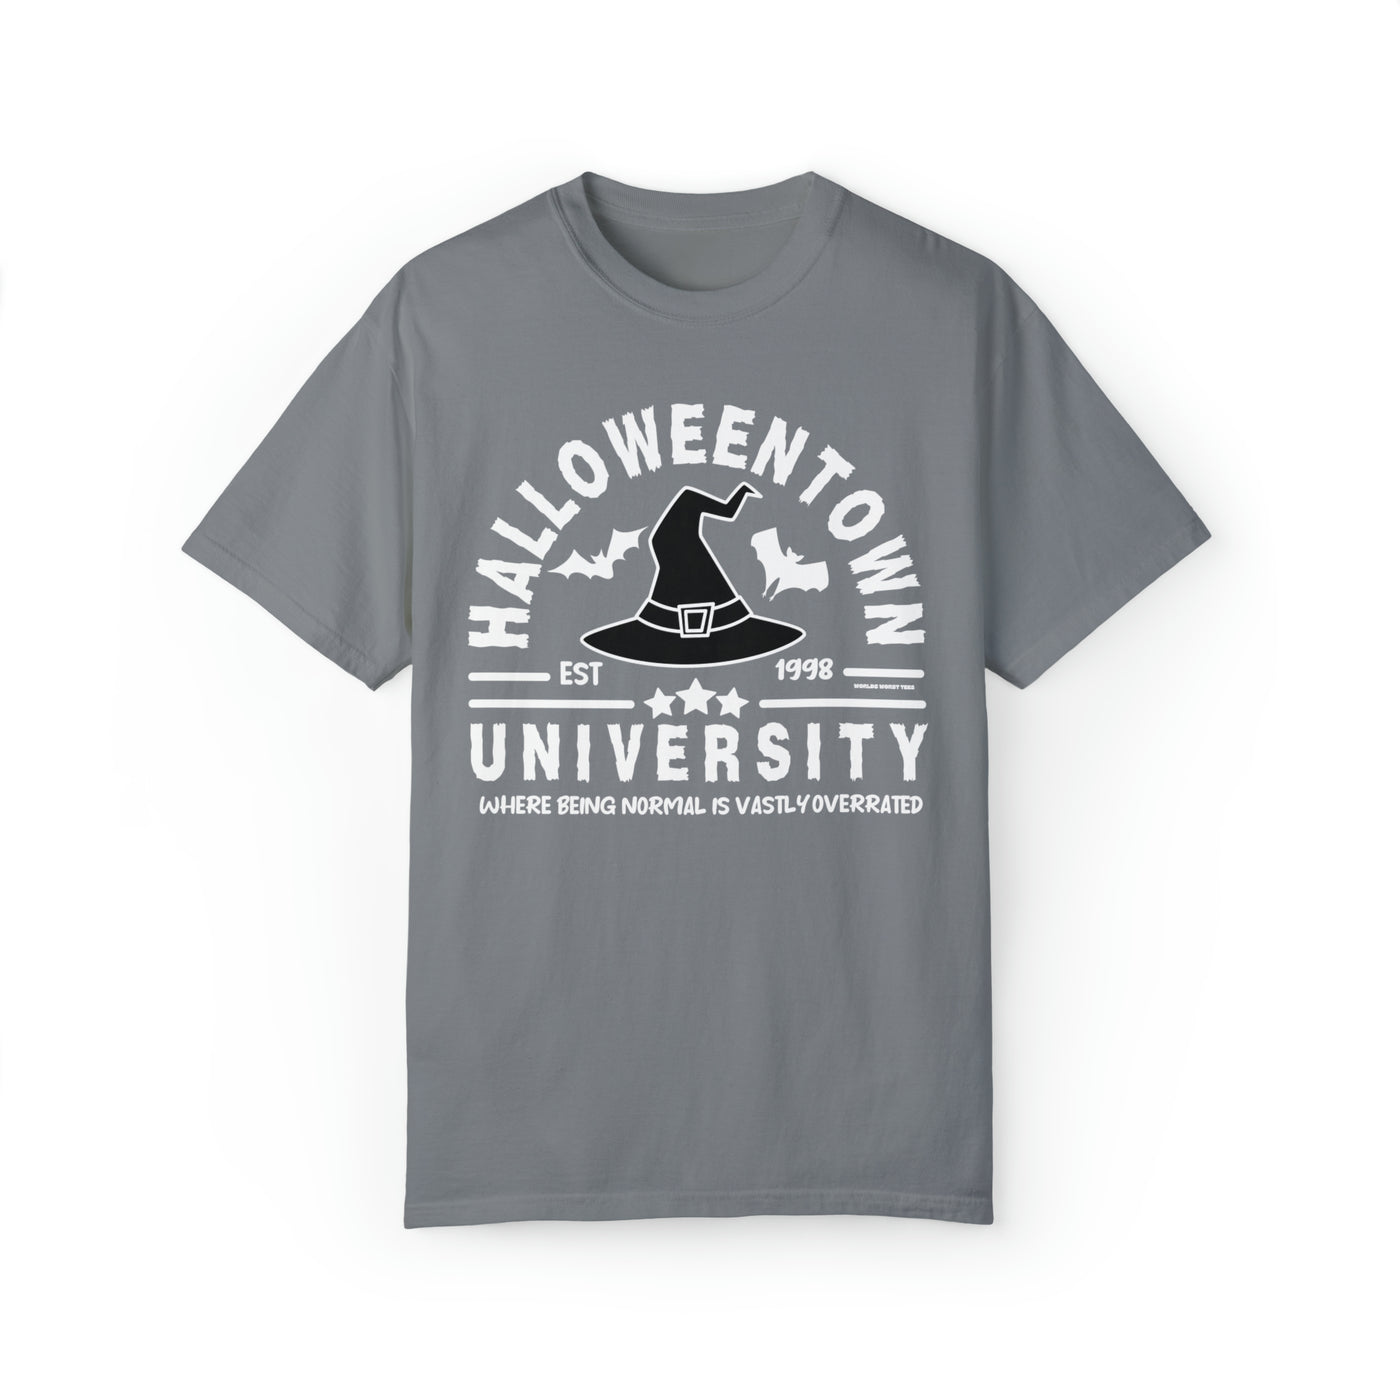 Halloweentown University Tee